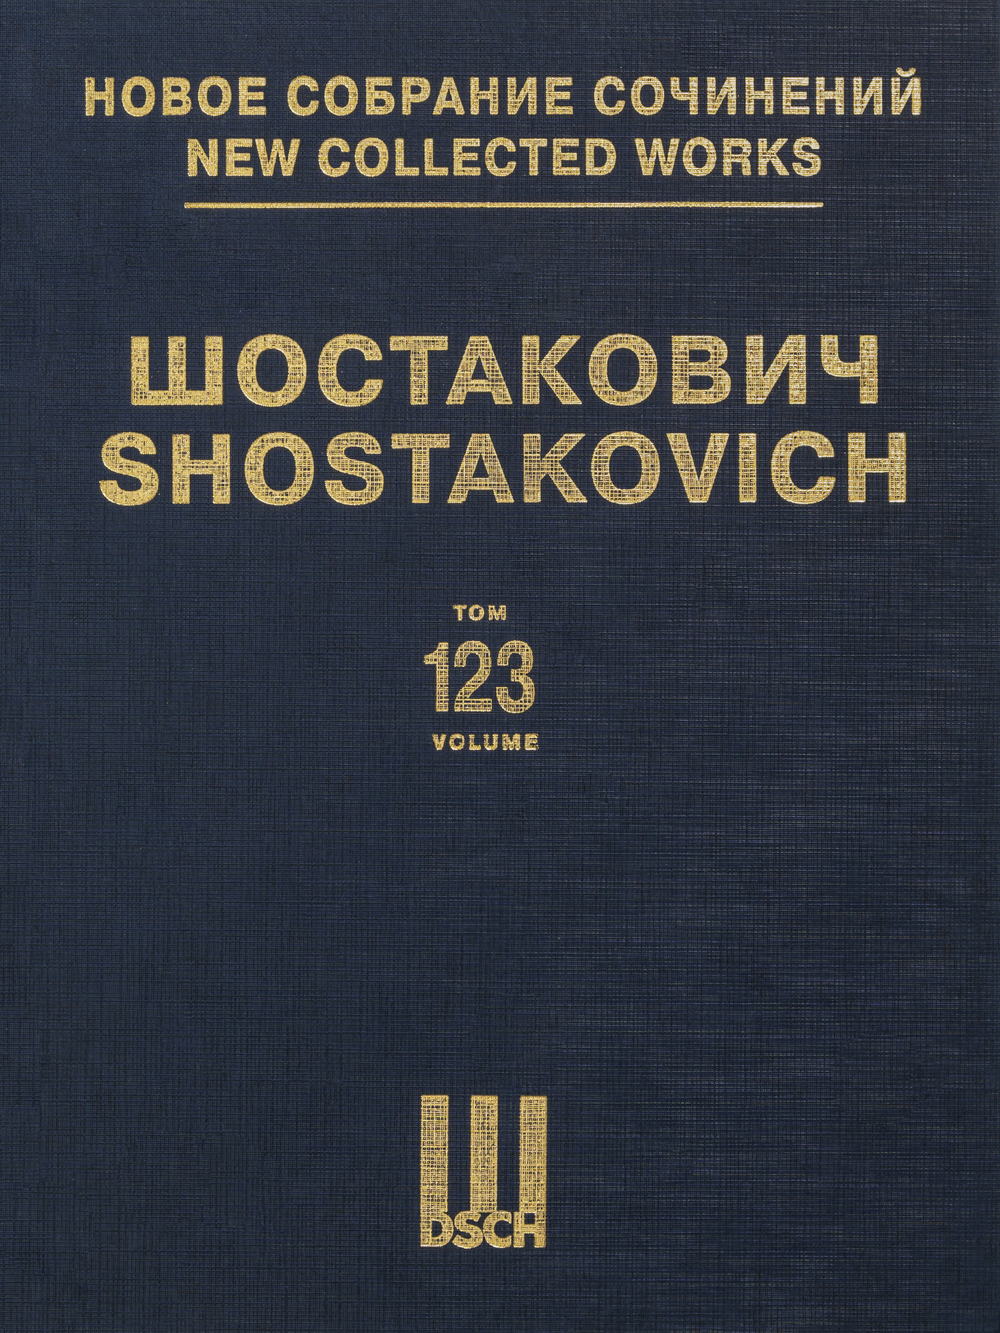 Shostakovich: "Alone", Op. 26